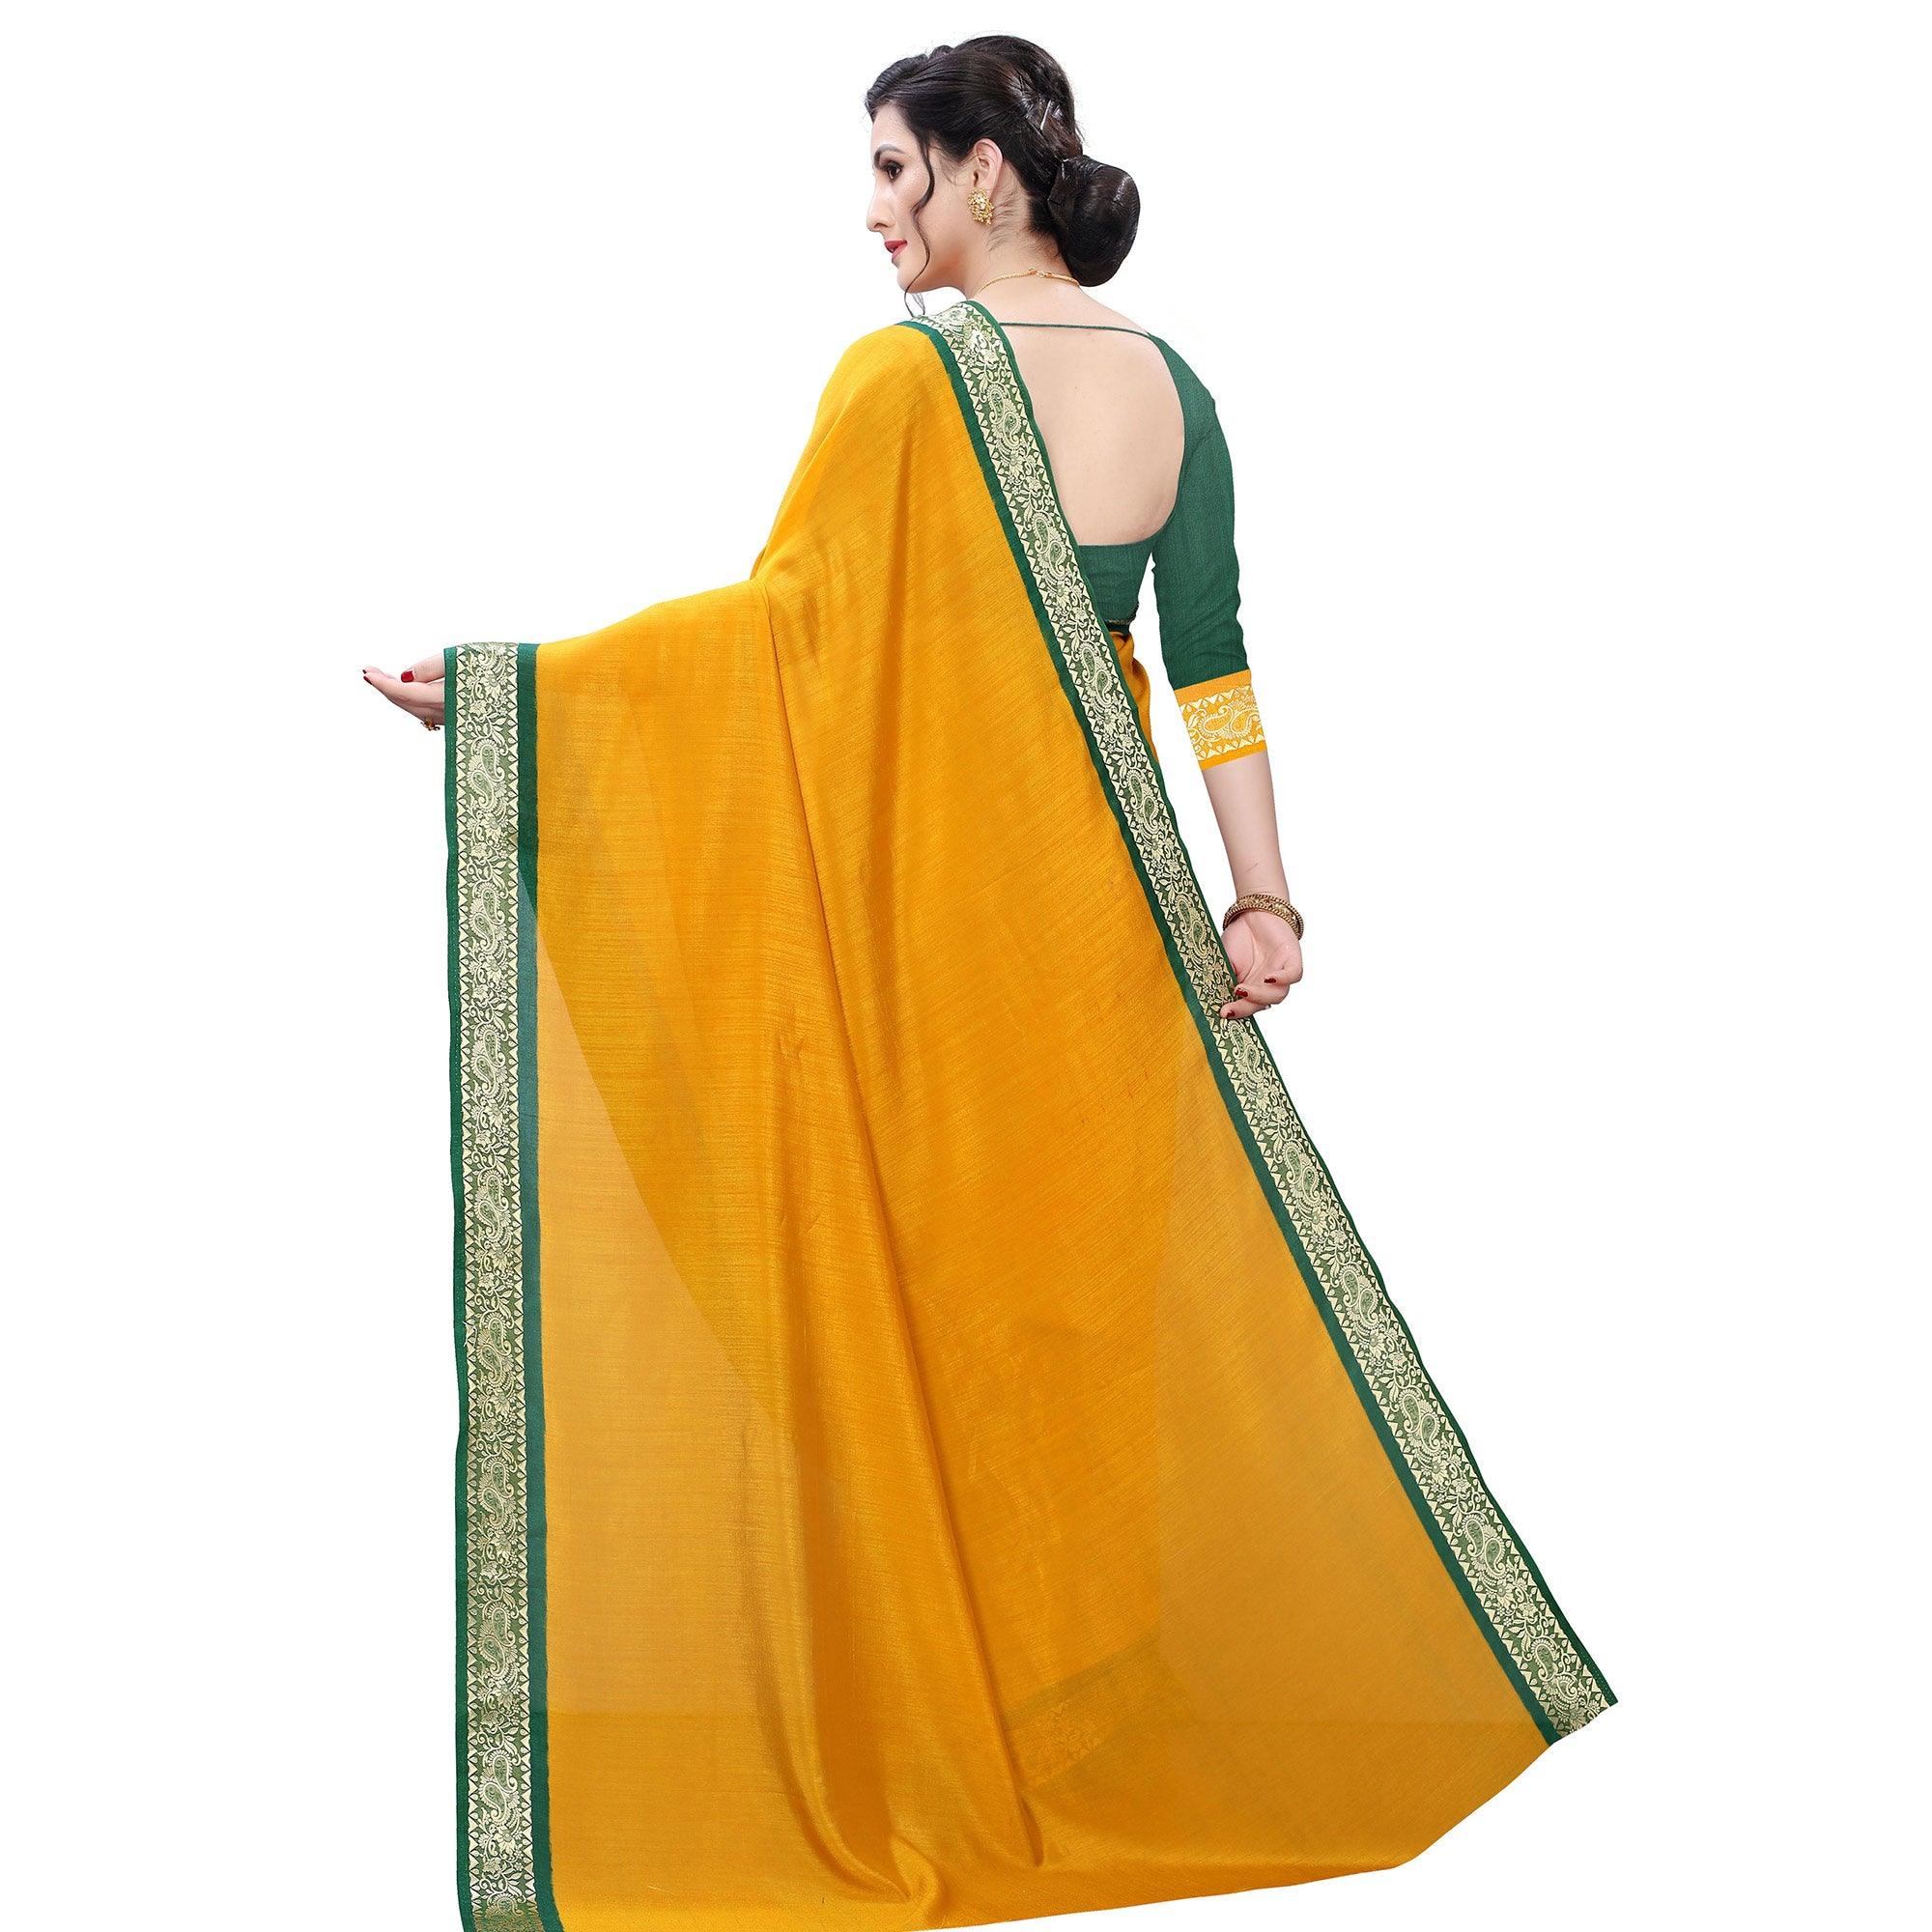 Capricious Mustard Yellow Colored Festive Wear Woven Vichitra Silk Saree - Peachmode